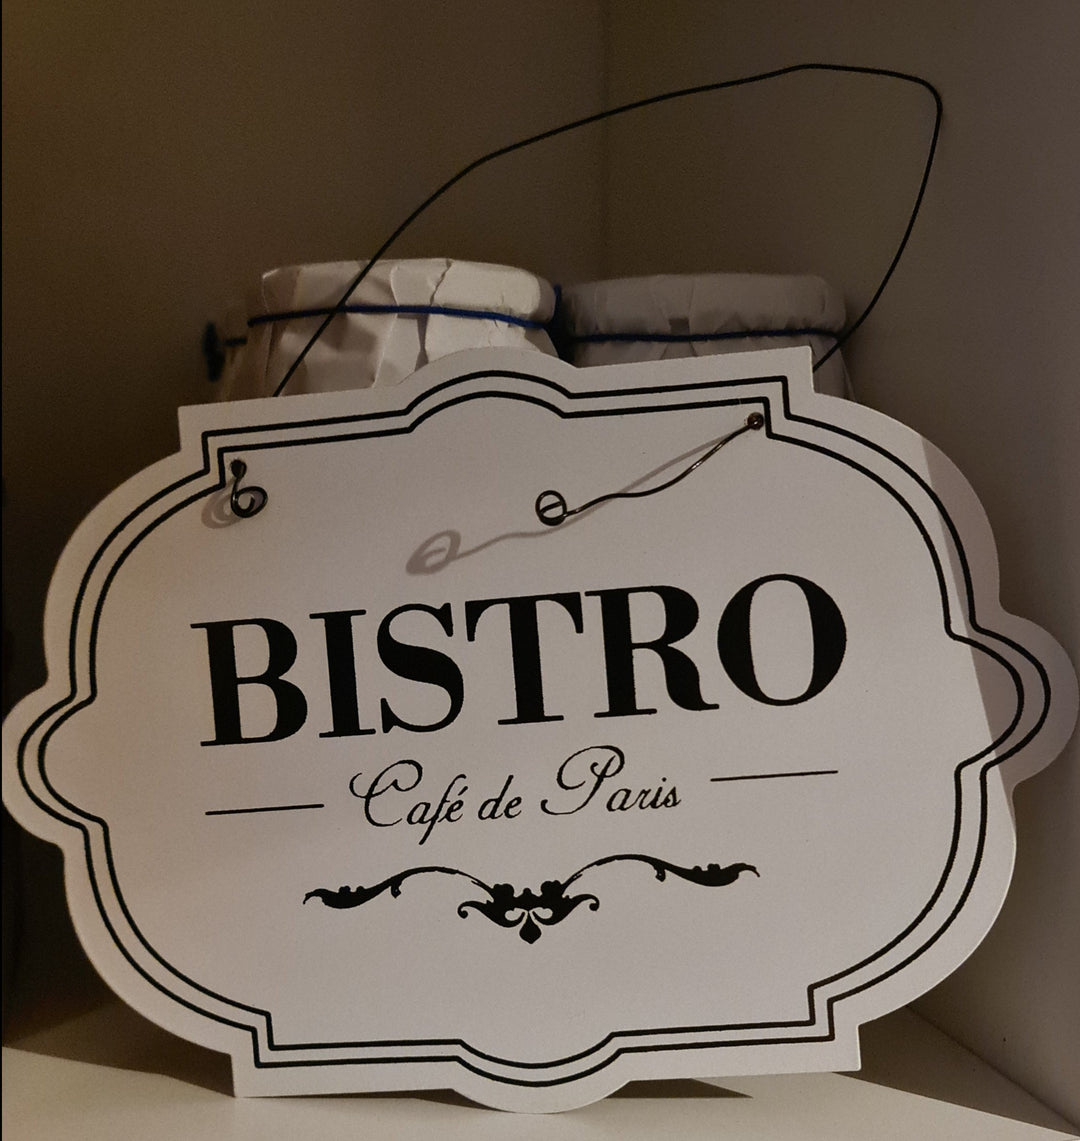 Blechschild  ca  21 cm  x 14 cm mit Beschriftung "BISTRO Cafe de Paris" - British Moments / Fernweh-Kaufhaus